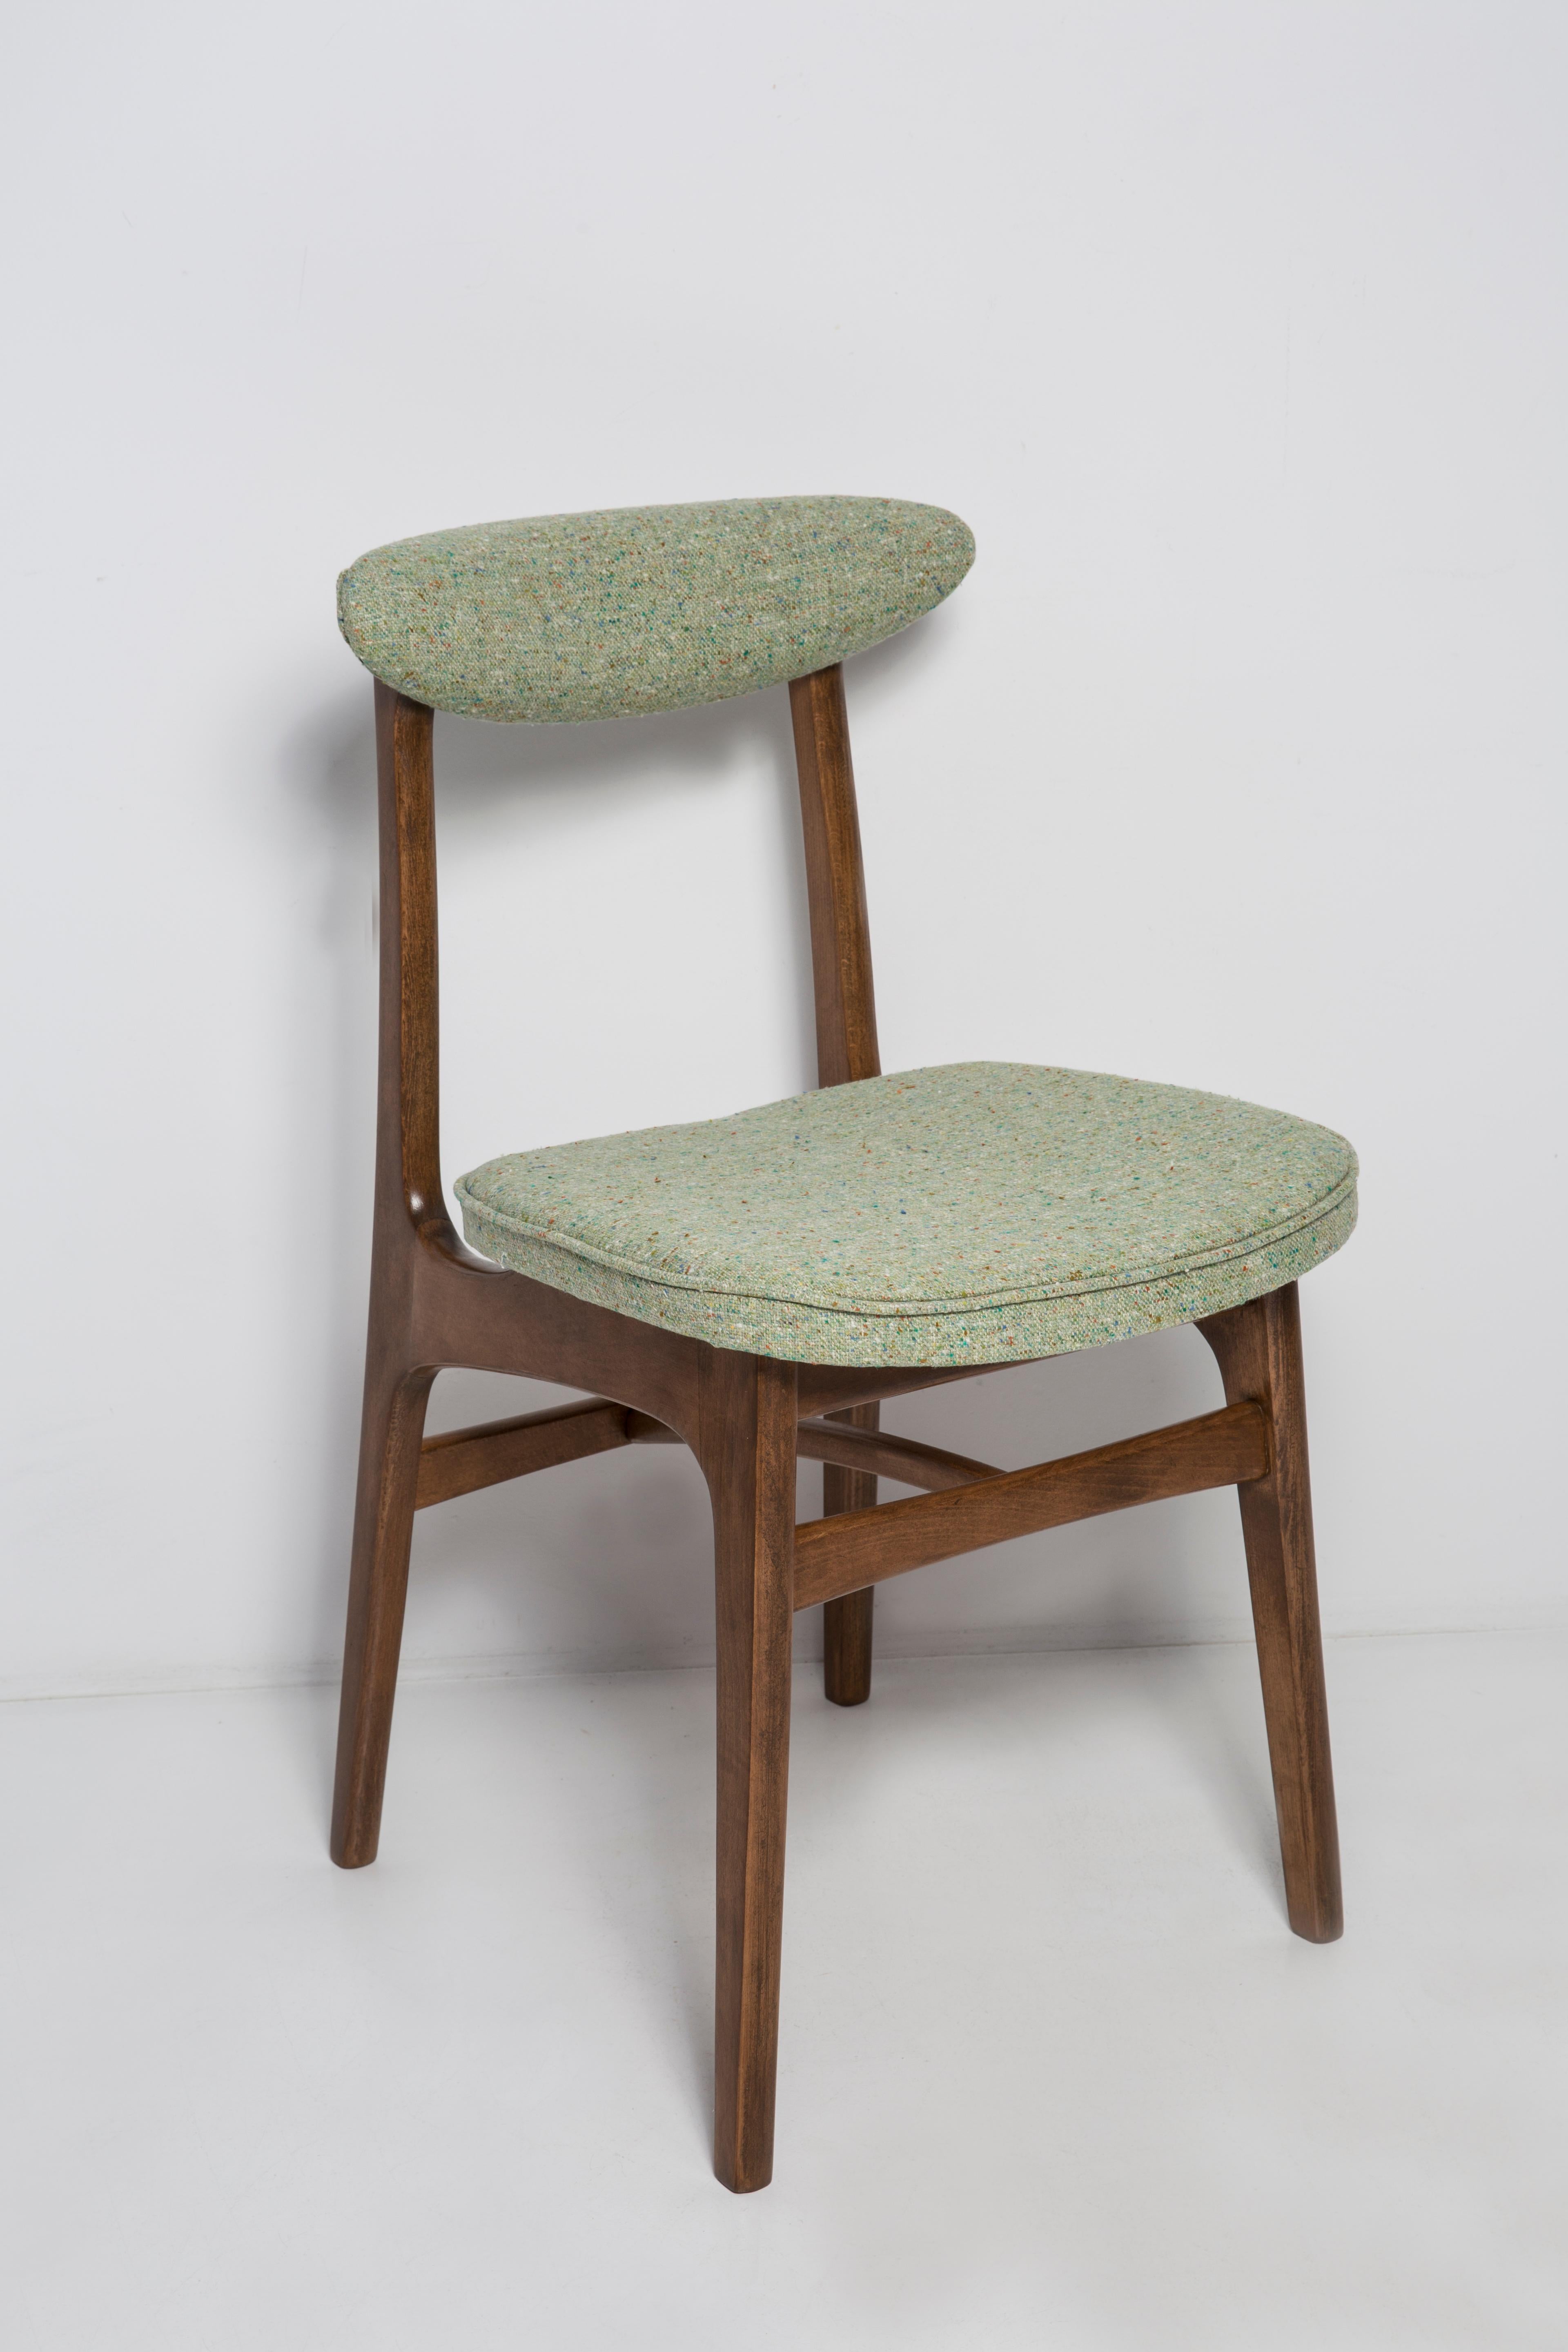 Chaise conçue par le professeur Rajmund Halas. Fabriqué en bois de hêtre. Le fauteuil a subi une rénovation complète de la tapisserie et les boiseries ont été rafraîchies. L'assise est habillée de laine vert pomme, un tissu durable et agréable au